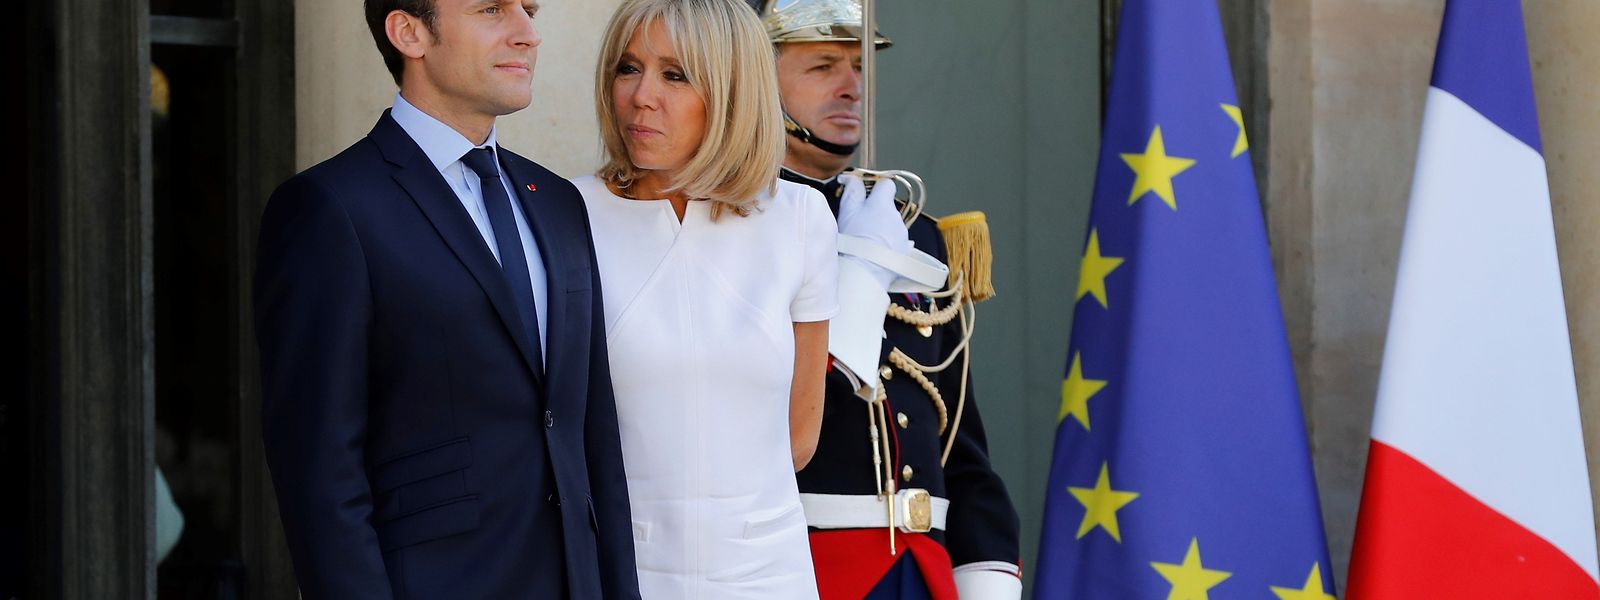 Die Rolle der "Première Dame" ist in Frankreich nicht klar definiert.